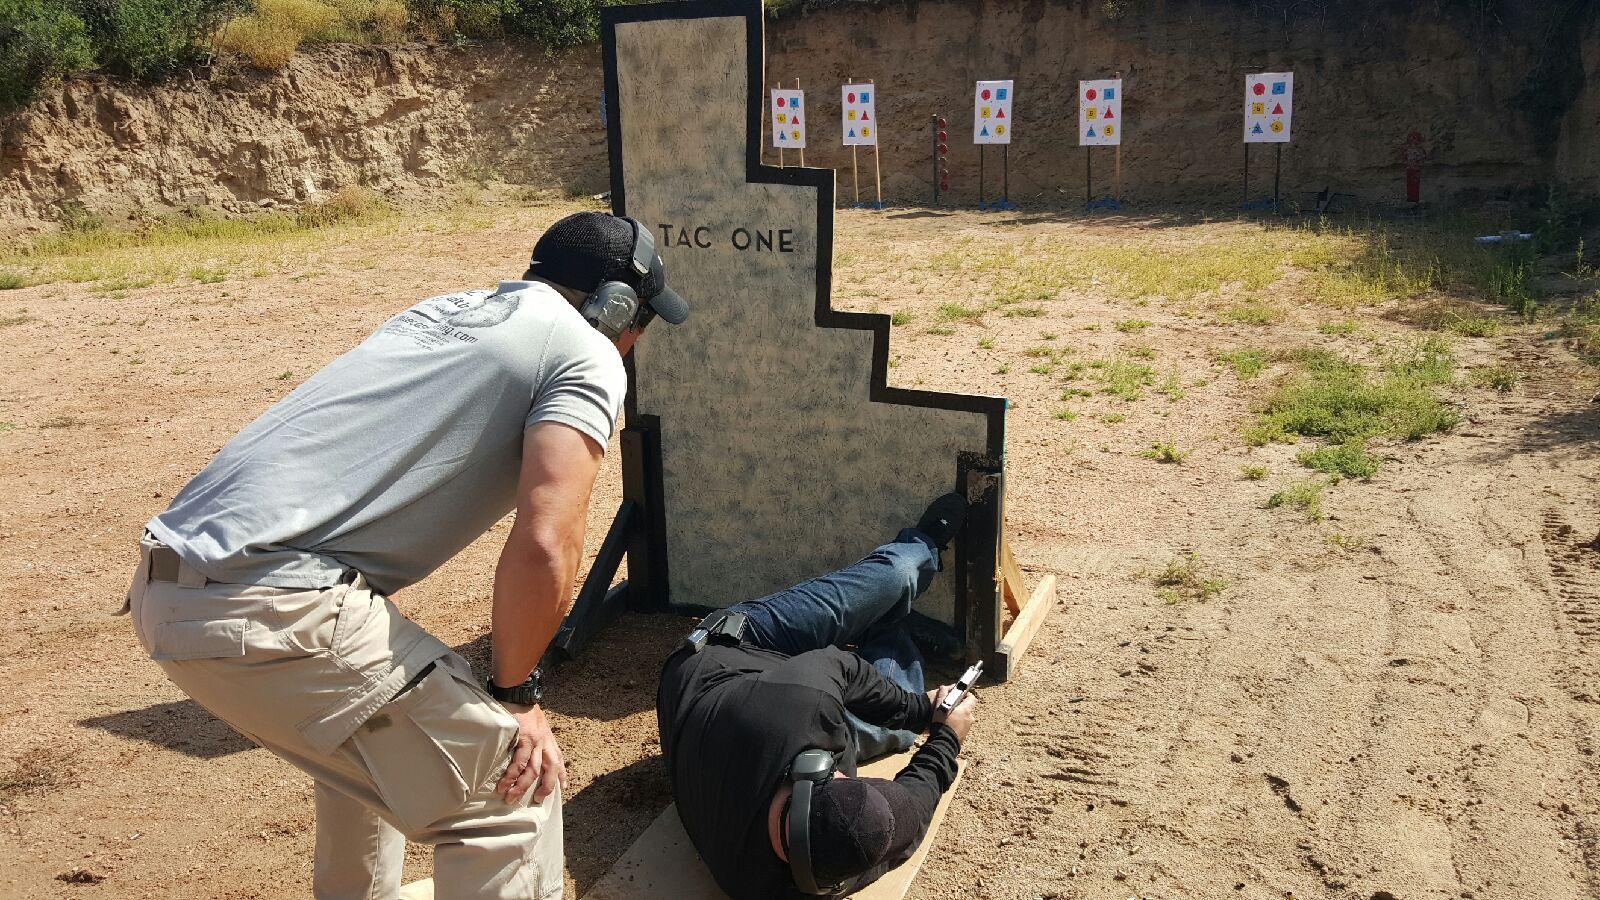 Civilian Firearms & CCW Training